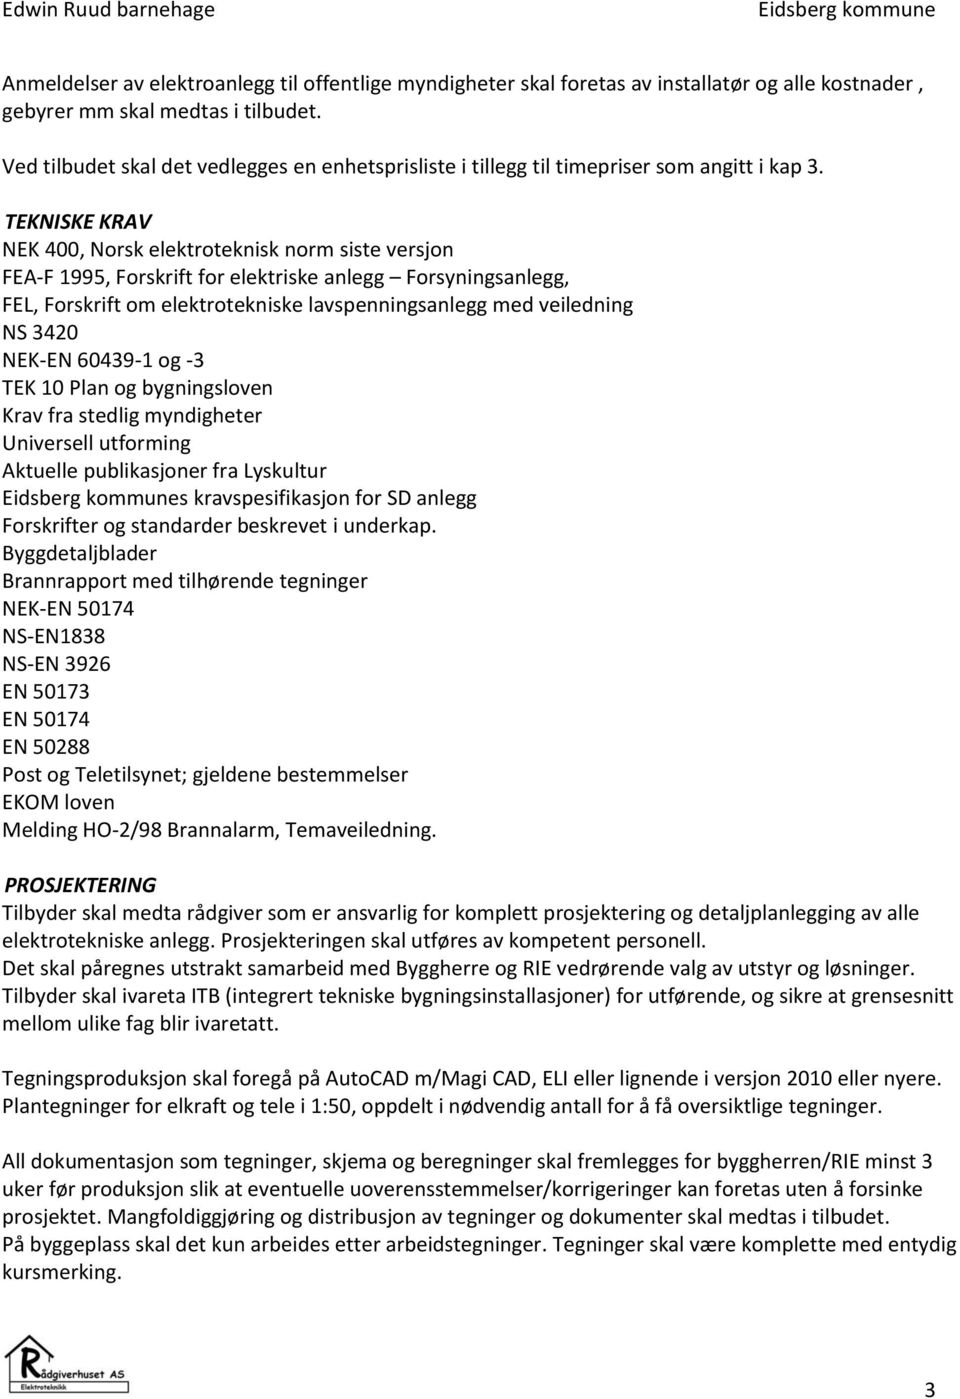 TEKNISKE KRAV NEK 400, Norsk elektroteknisk norm siste versjon FEA-F 1995, Forskrift for elektriske anlegg Forsyningsanlegg, FEL, Forskrift om elektrotekniske lavspenningsanlegg med veiledning NS